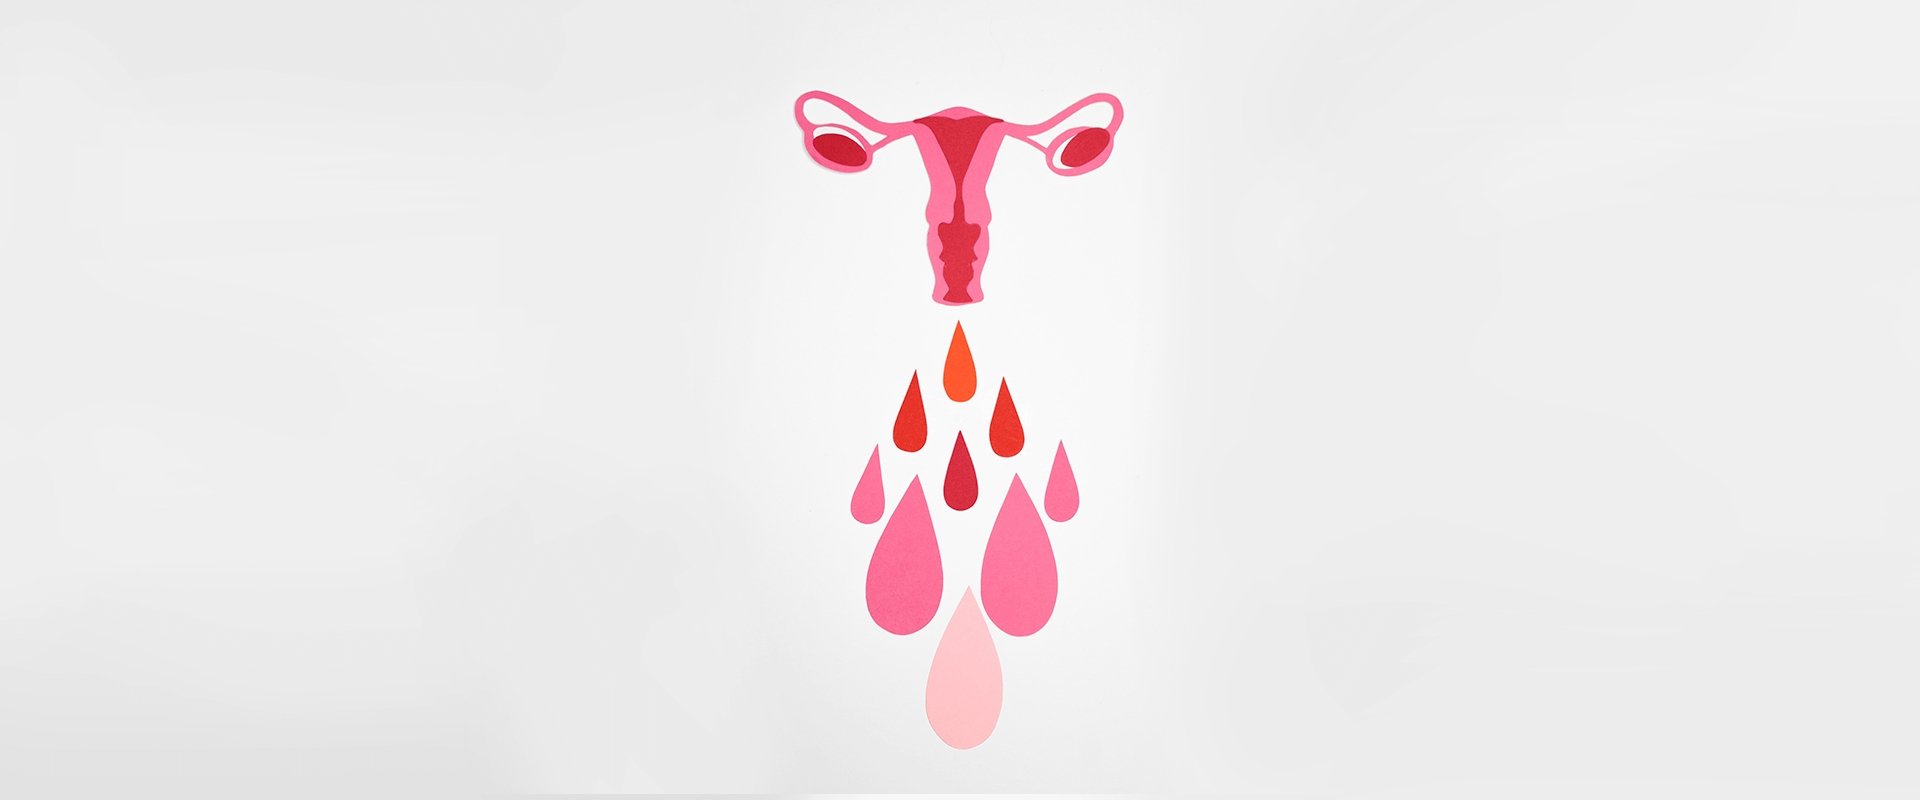 Conceito de menstruação em fundo rosa